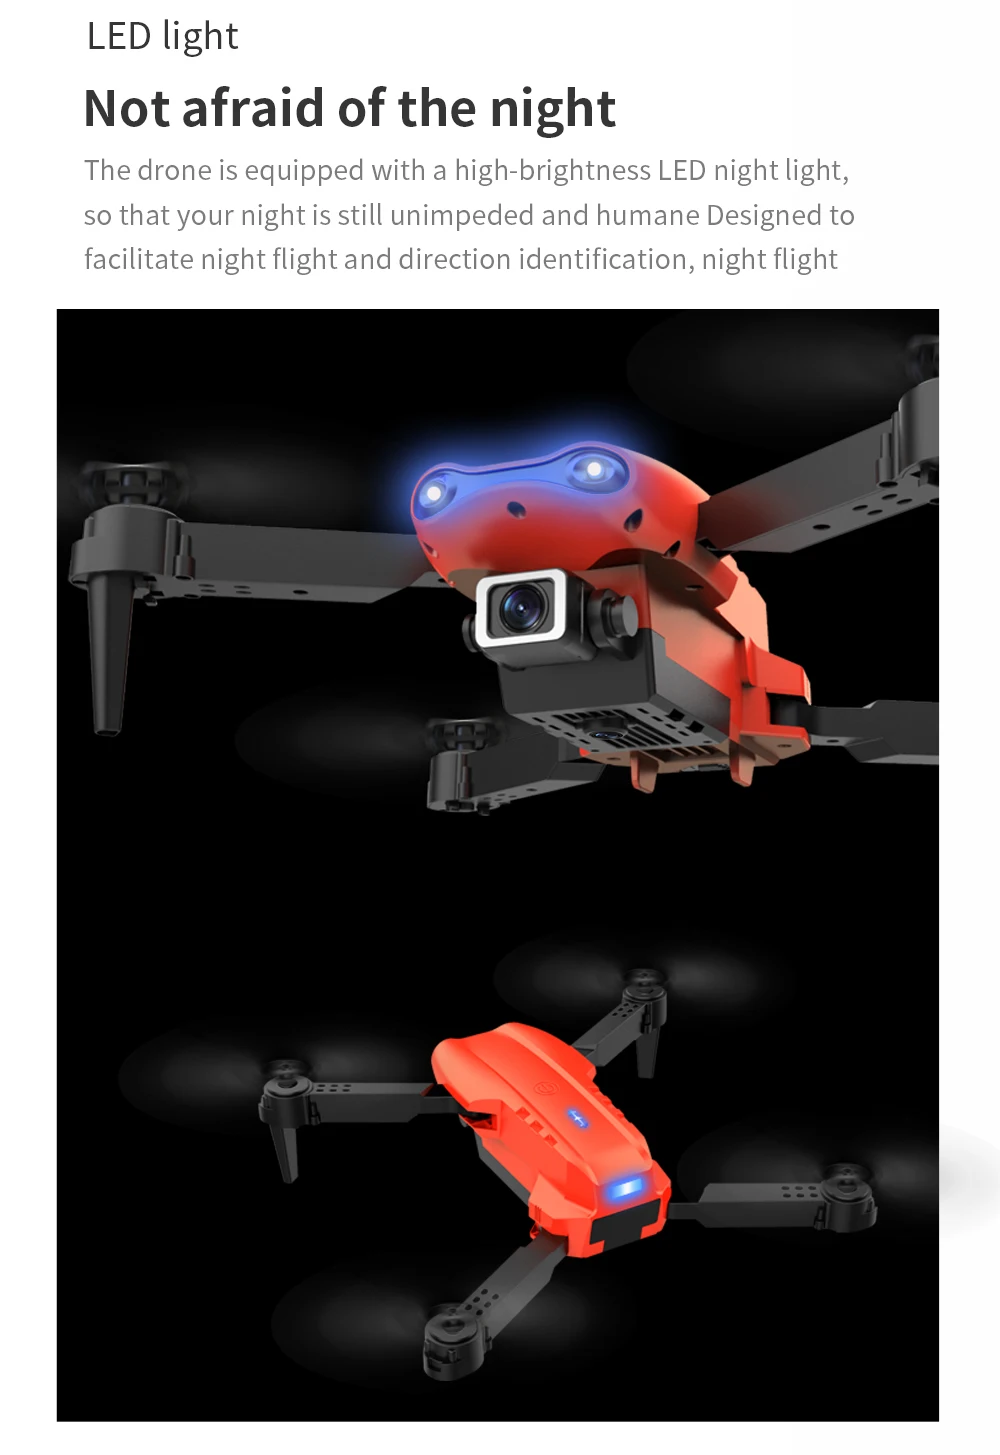 Mini Camera Drone HD 4K Foldable Quadcopter